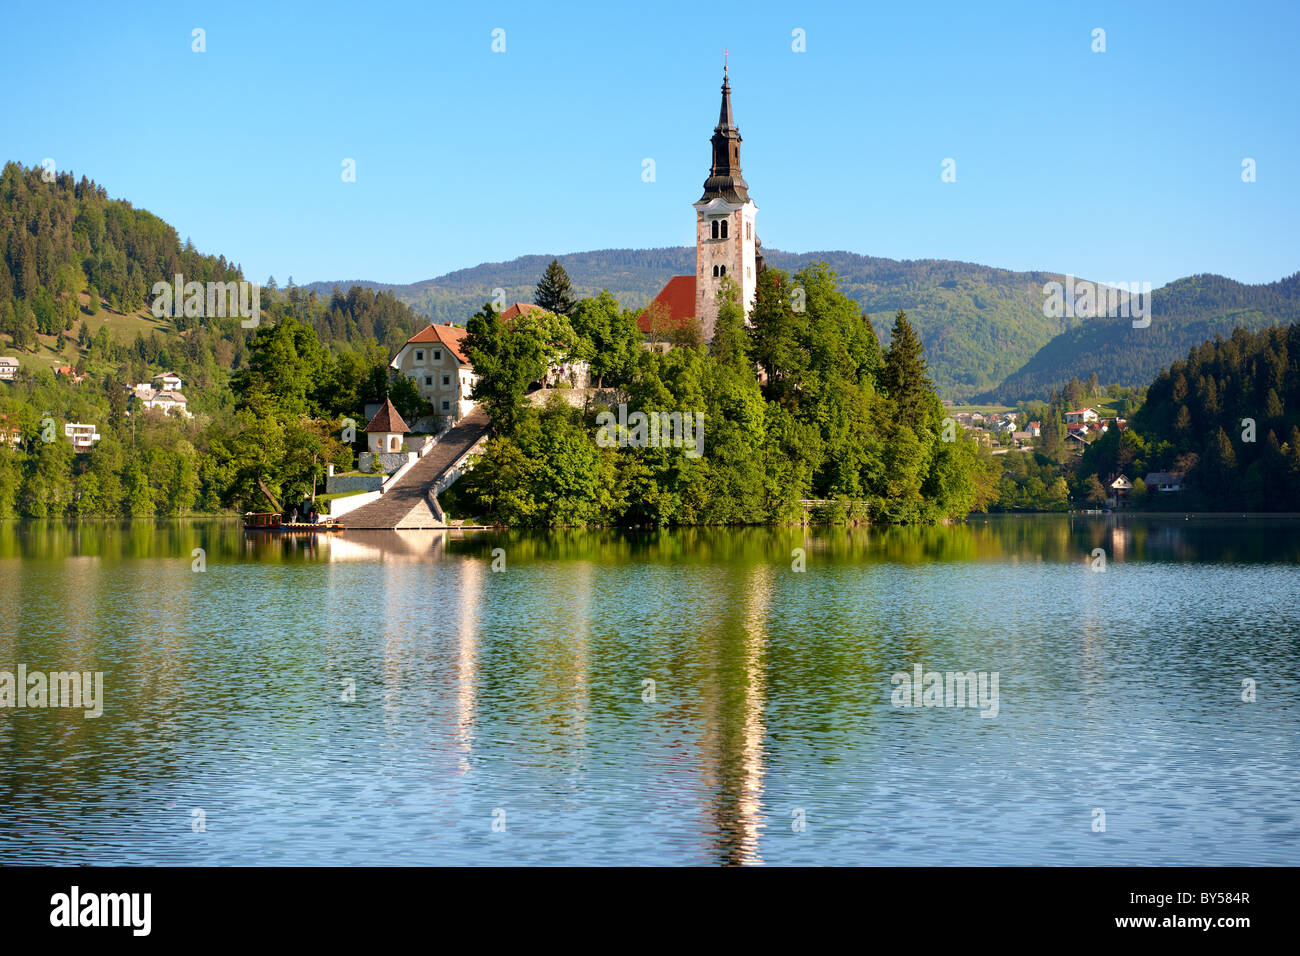 Übernahme der Wallfahrtskirche Maria in der Mitte des Sees Bled Slowenien. Stockfoto